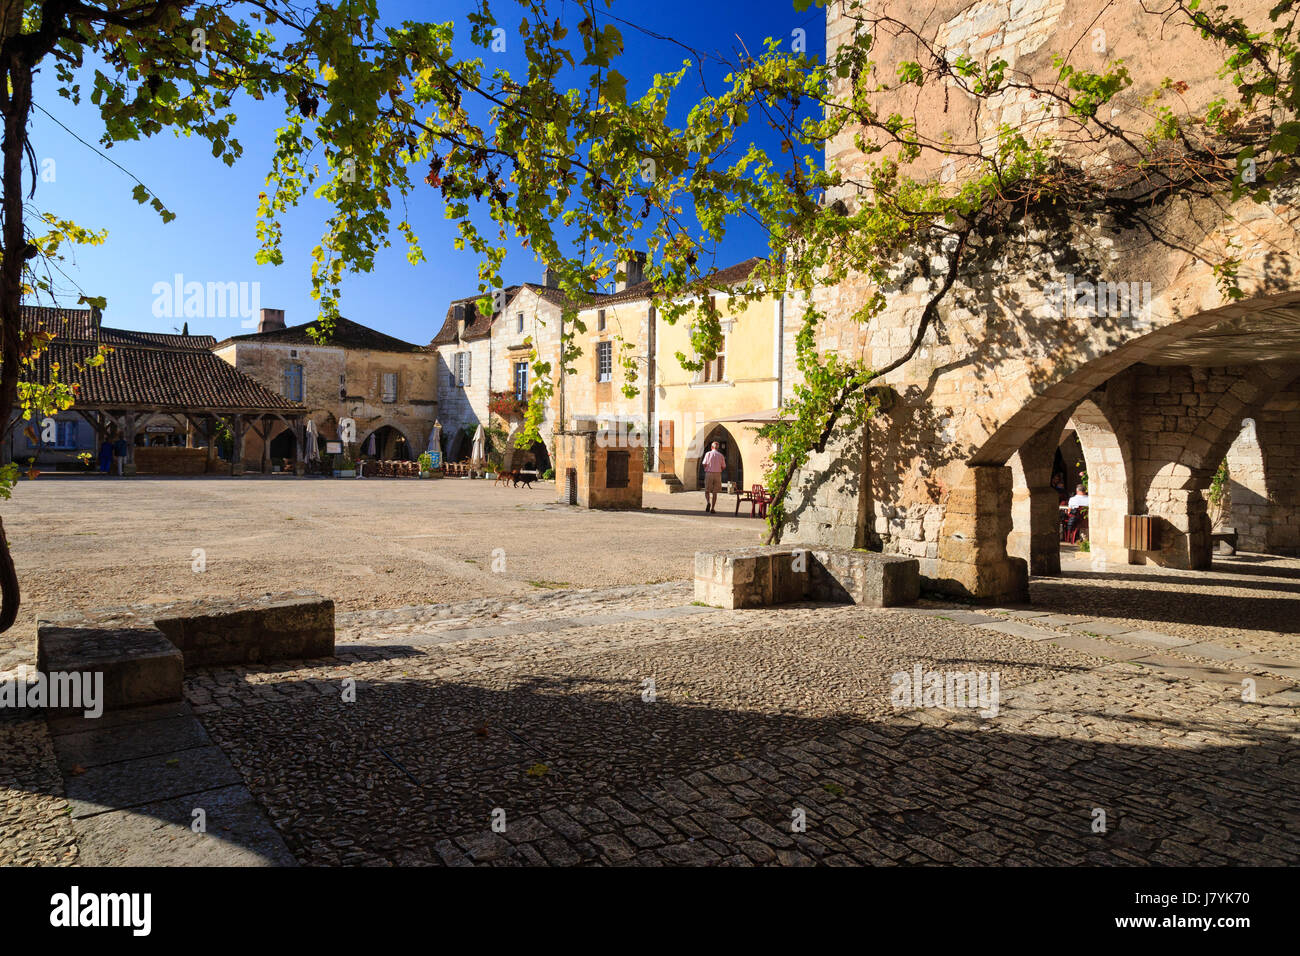 France, Dordogne, Monpazier, labelled Les Plus Beaux Villages de France (The Most beautiful Villages of France), Cornieres square Stock Photo